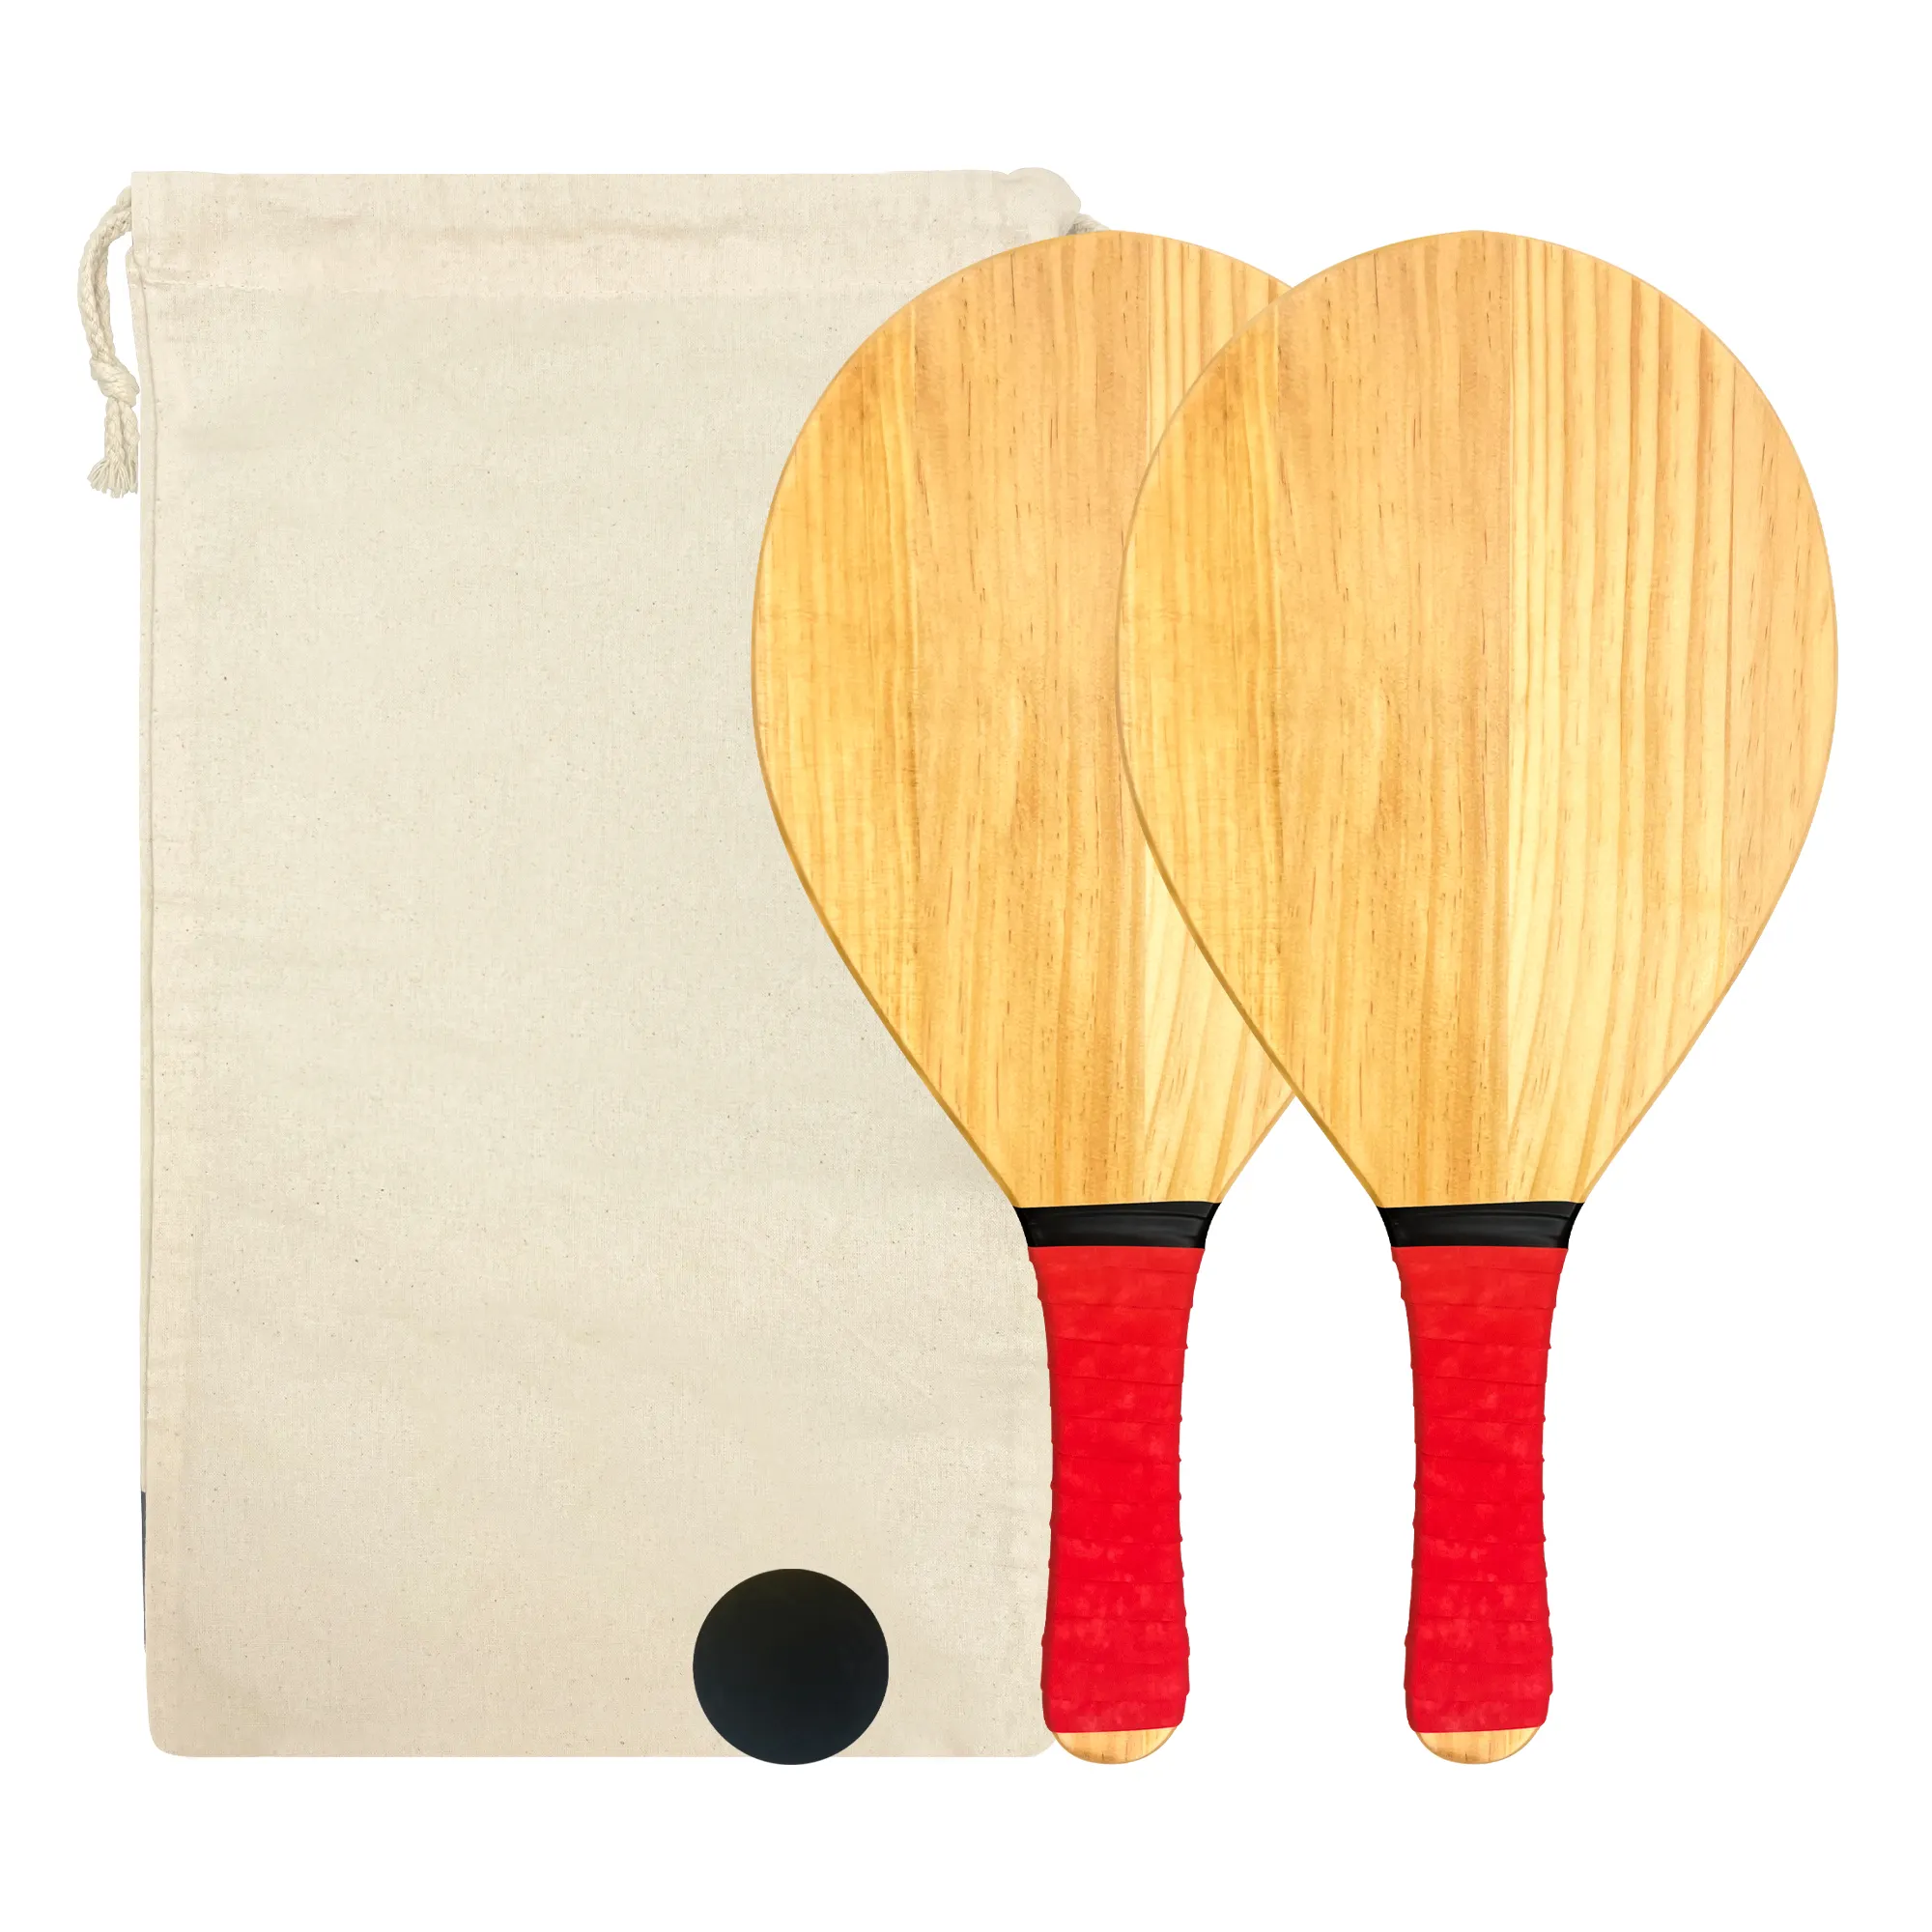 Juego completo de raquetas de madera de pino macizo, juego de raquetas de playa de madera con empuñaduras rojas con 2 paletas, 1 Bola